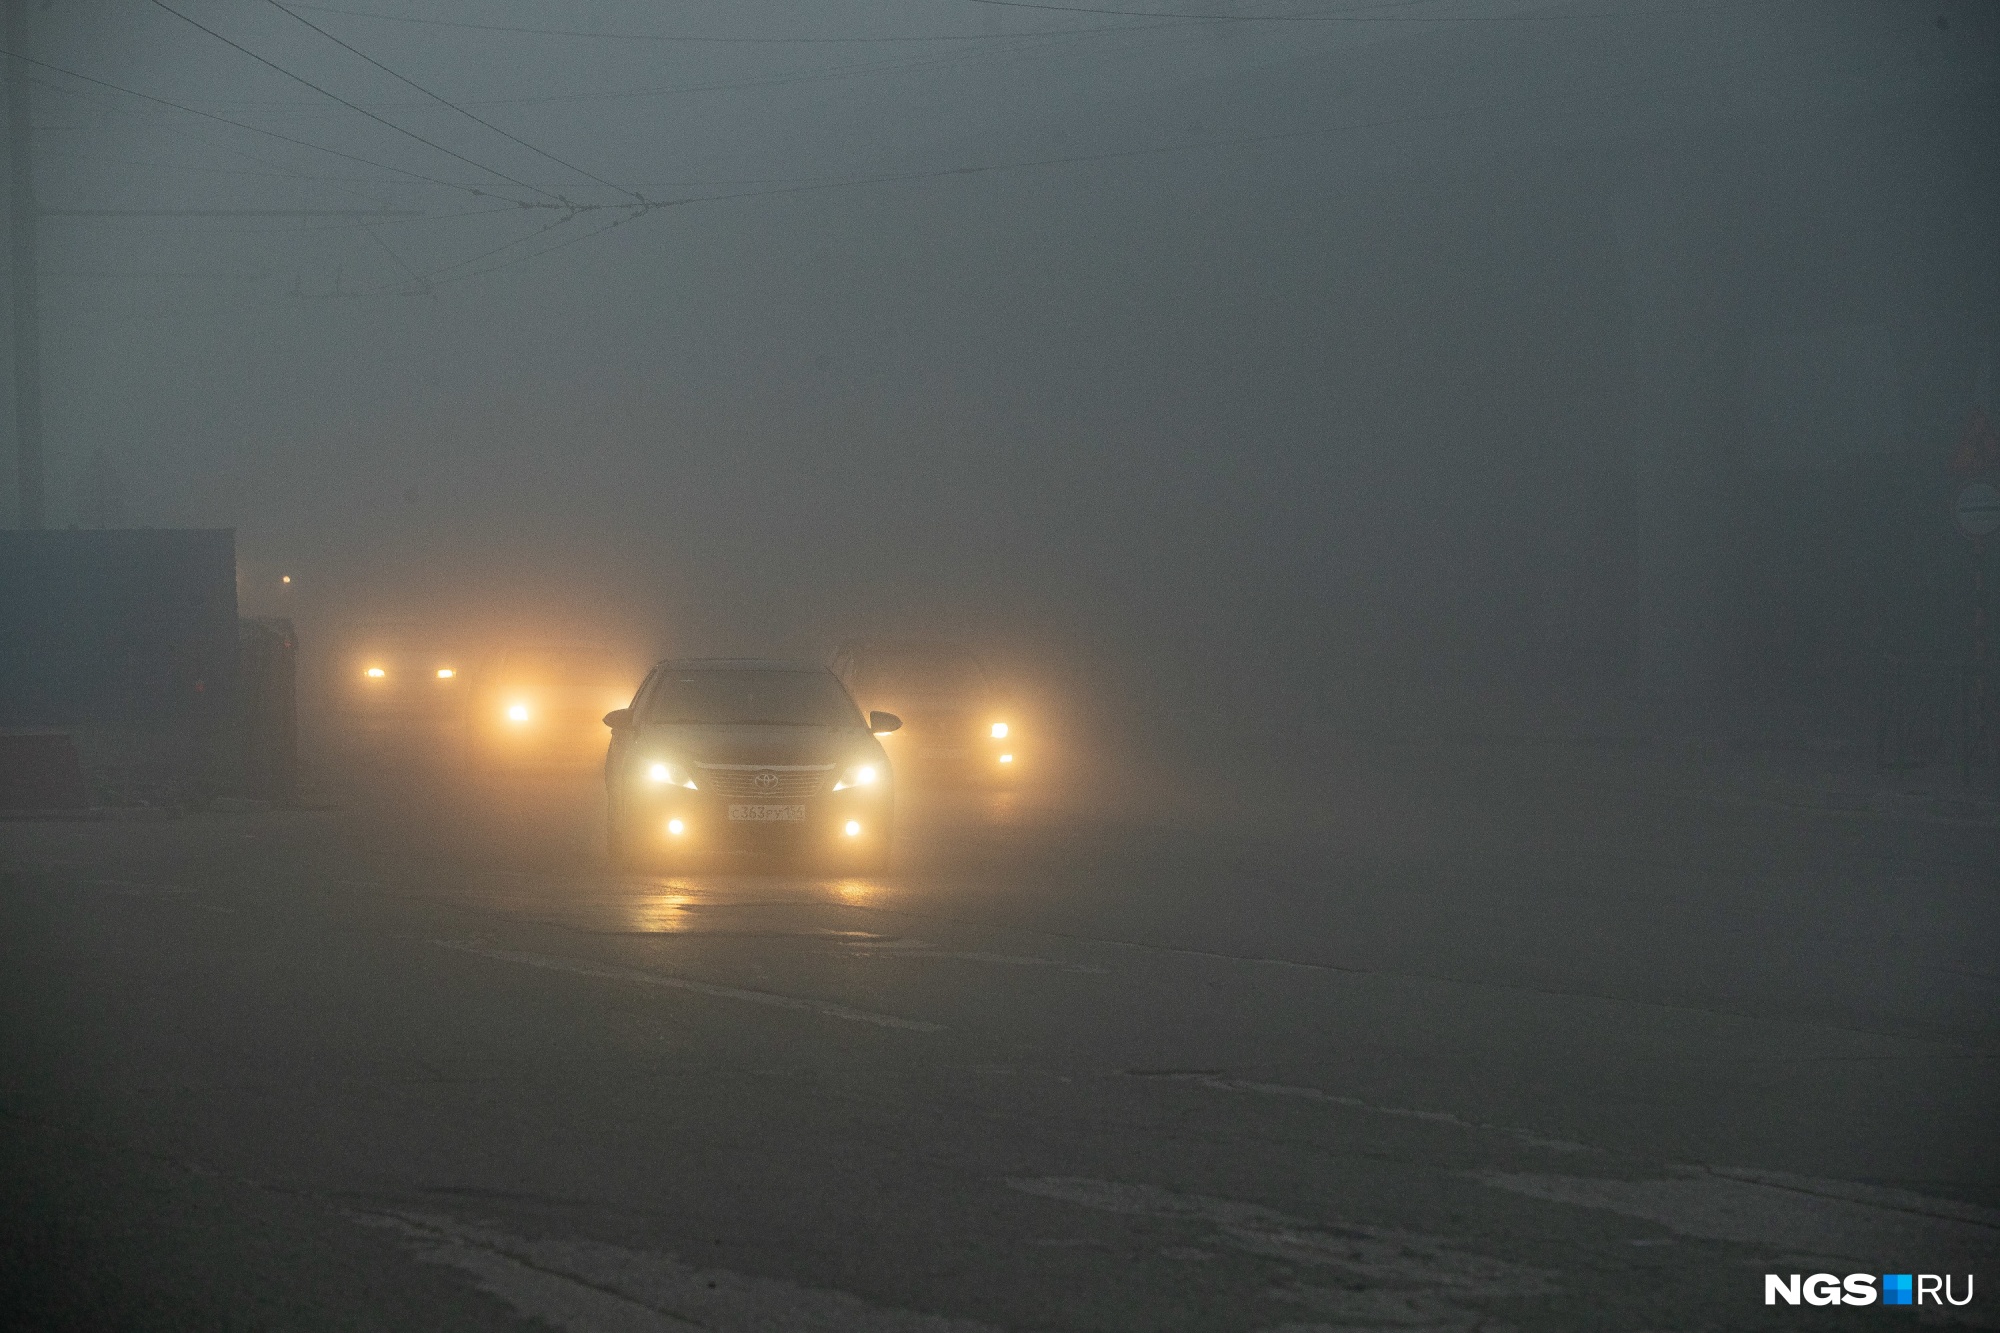 В Новосибирске резко ухудшилось качество воздуха. Жителям рекомендуют не выходить на улицу и закрыть окна